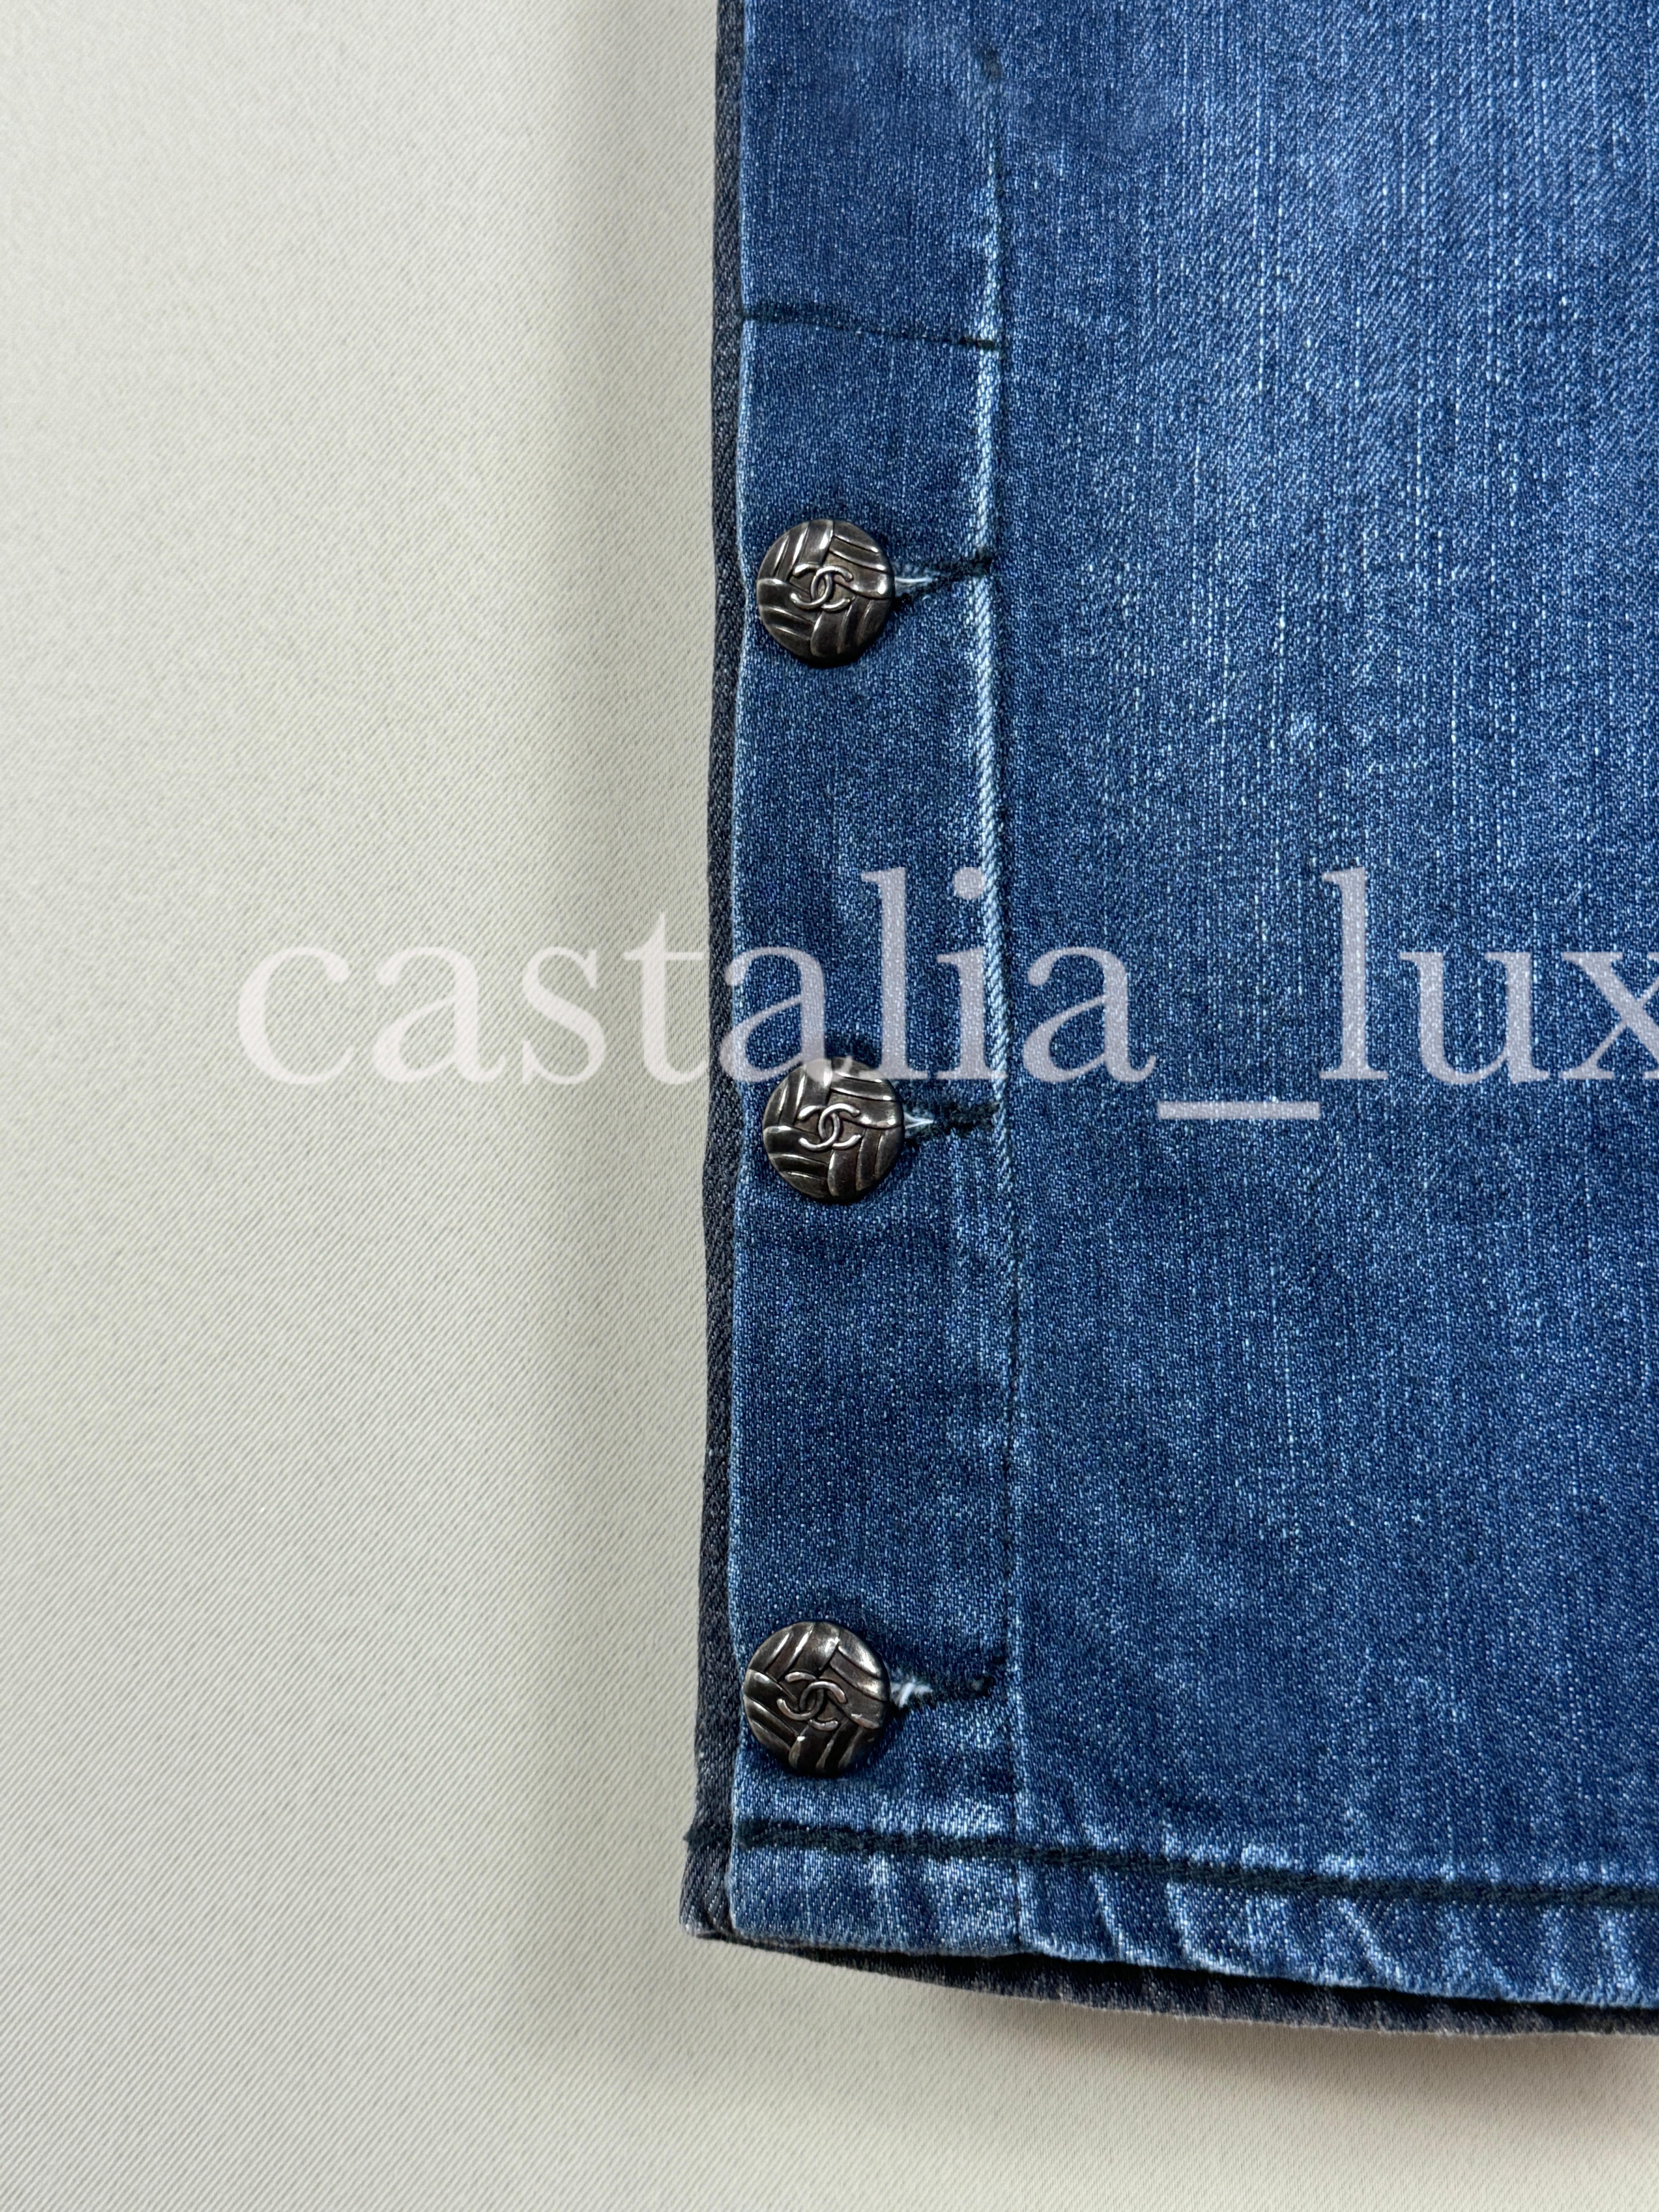 Jean droit bicolore Chanel (devant en bleu, dos en noir) avec boutons piqués du logo CC à l'ourlet.
Prix boutique 2 200€
Taille 36 FR. Condit, état.